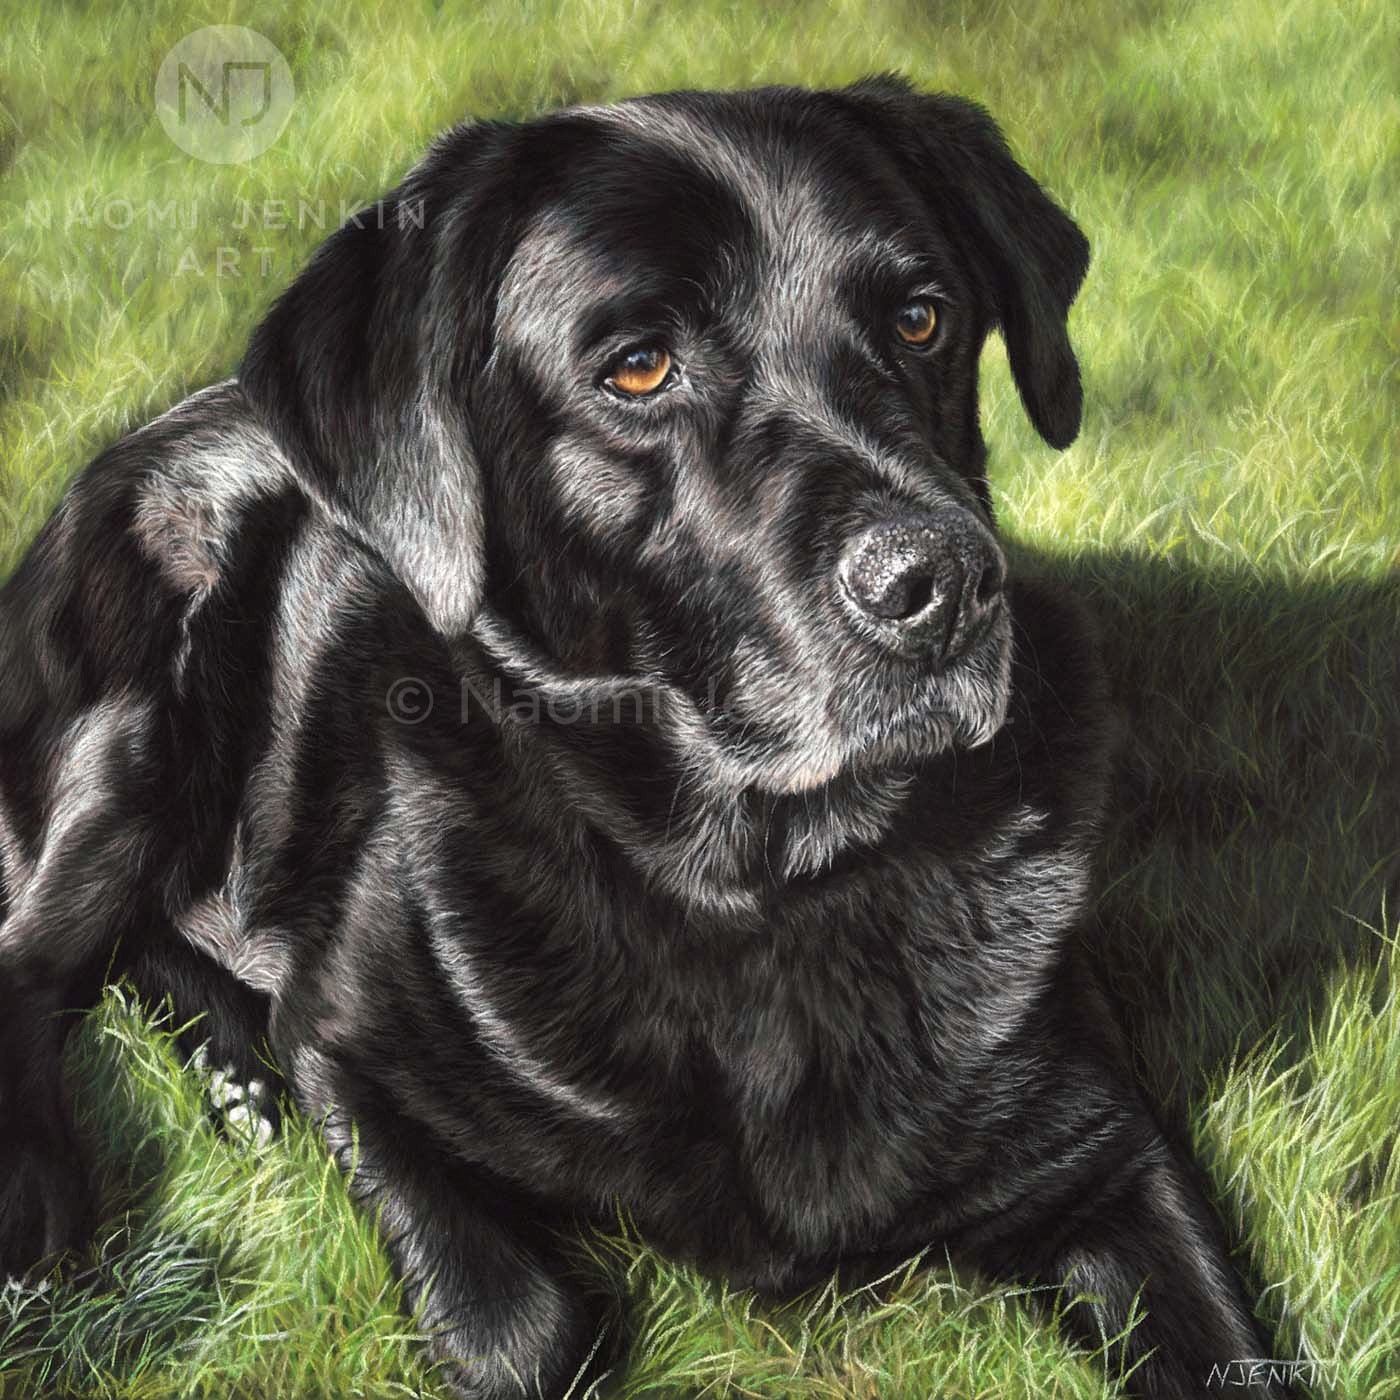 Black Labrador pet portrait by Naomi Jenkin Art. 